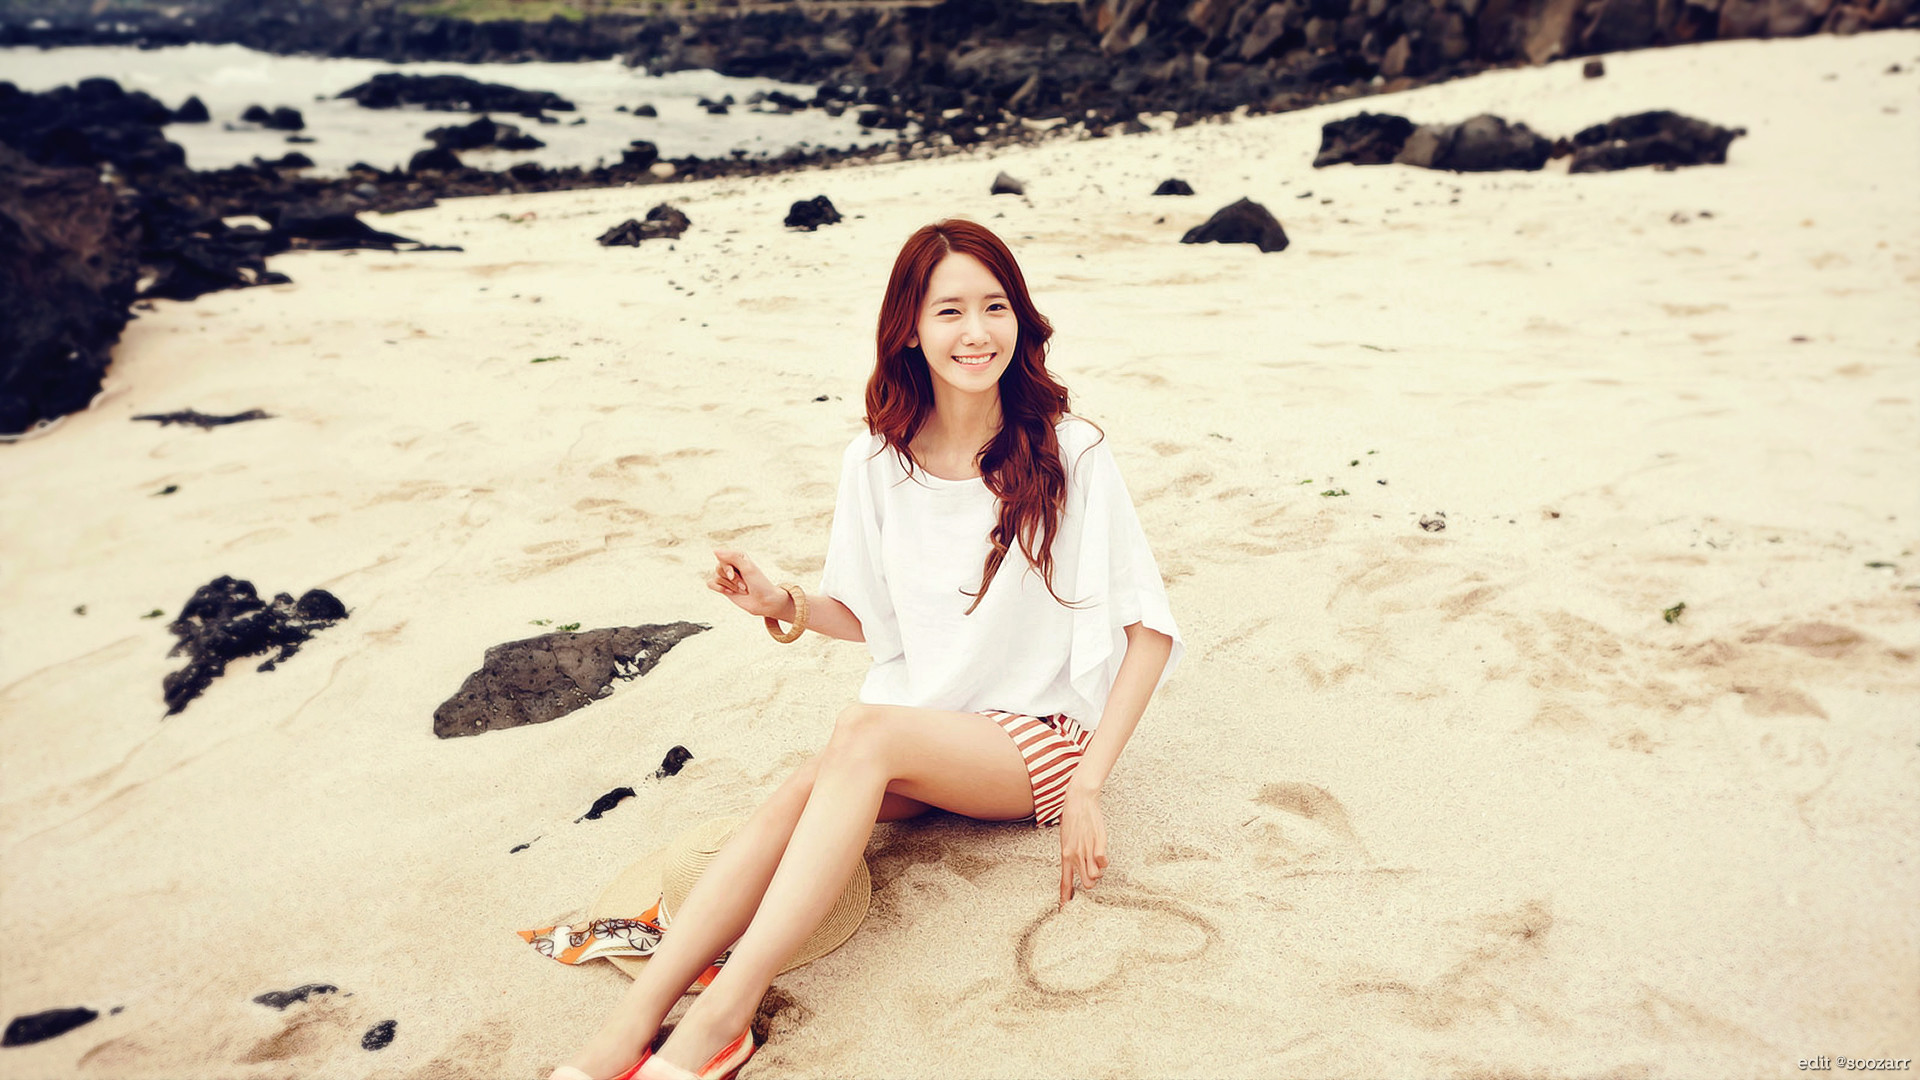 1920x1080 Yoona, Girls' Generation, Asian, SNSD, Girl, Sand, Beach,. Wallpaper Details